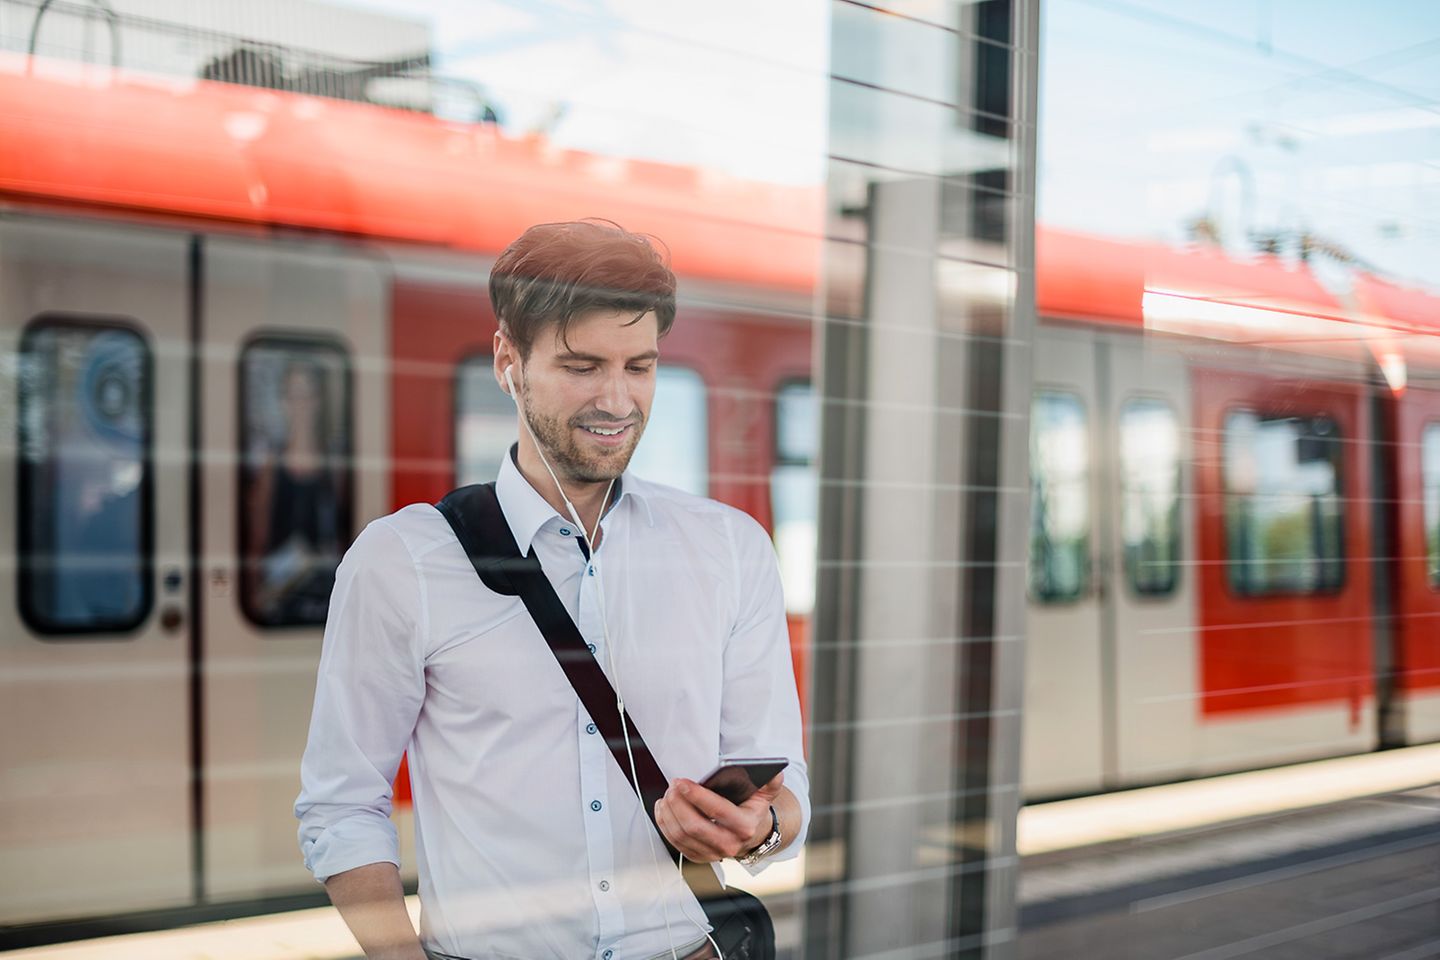 Mann steht am Bahnsteig und schaut lächelnd auf sein Smartphone. Im Hintergund steht eine Regionalbahn.